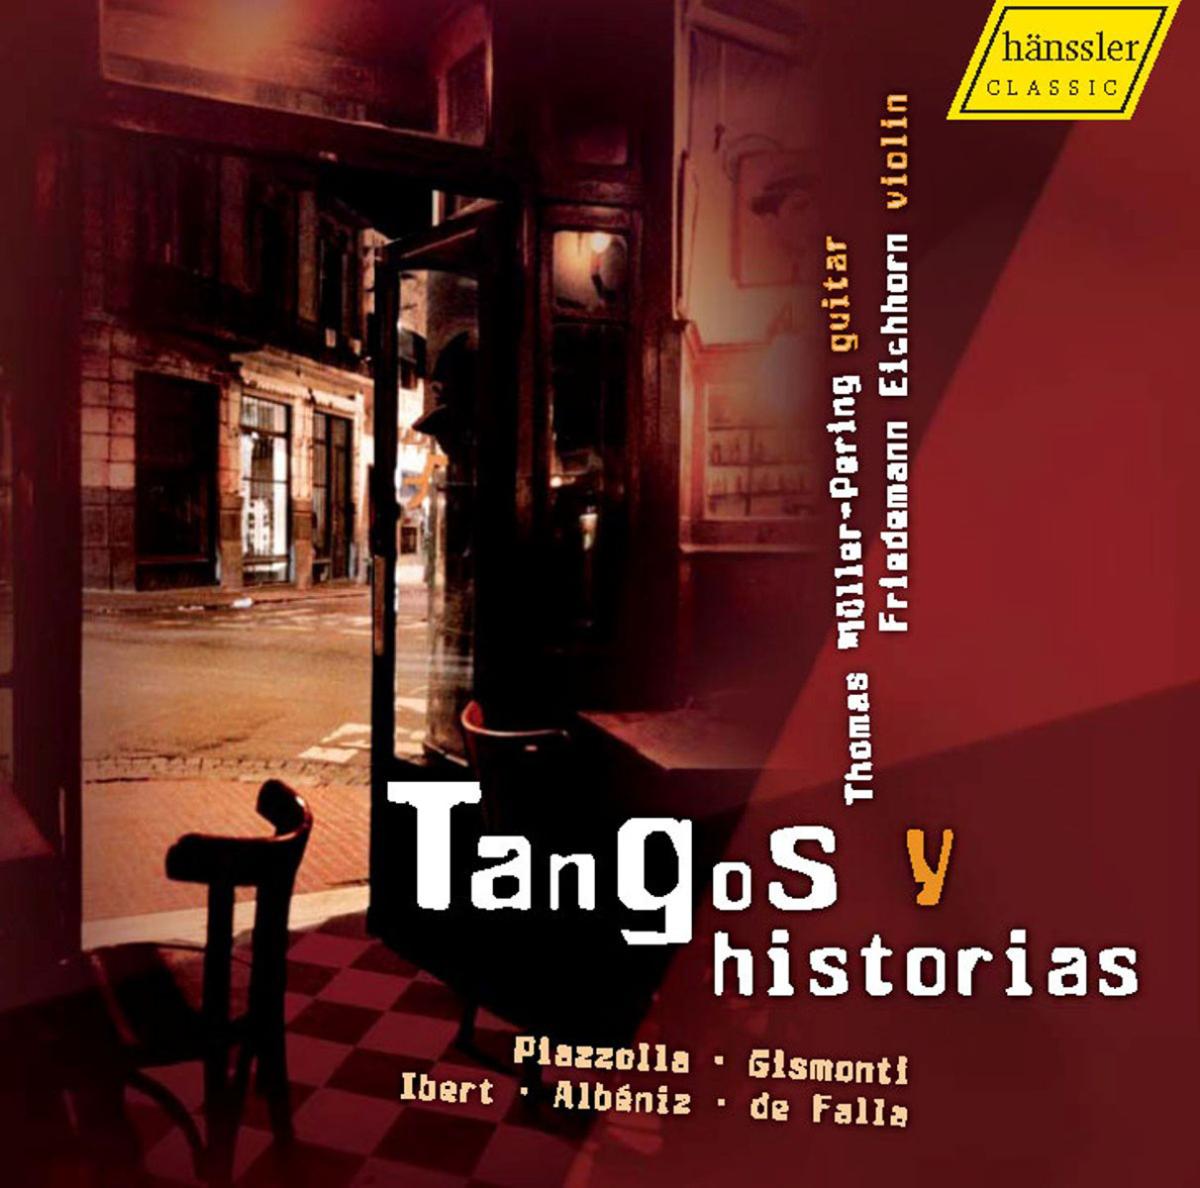 Tangos Y Historias